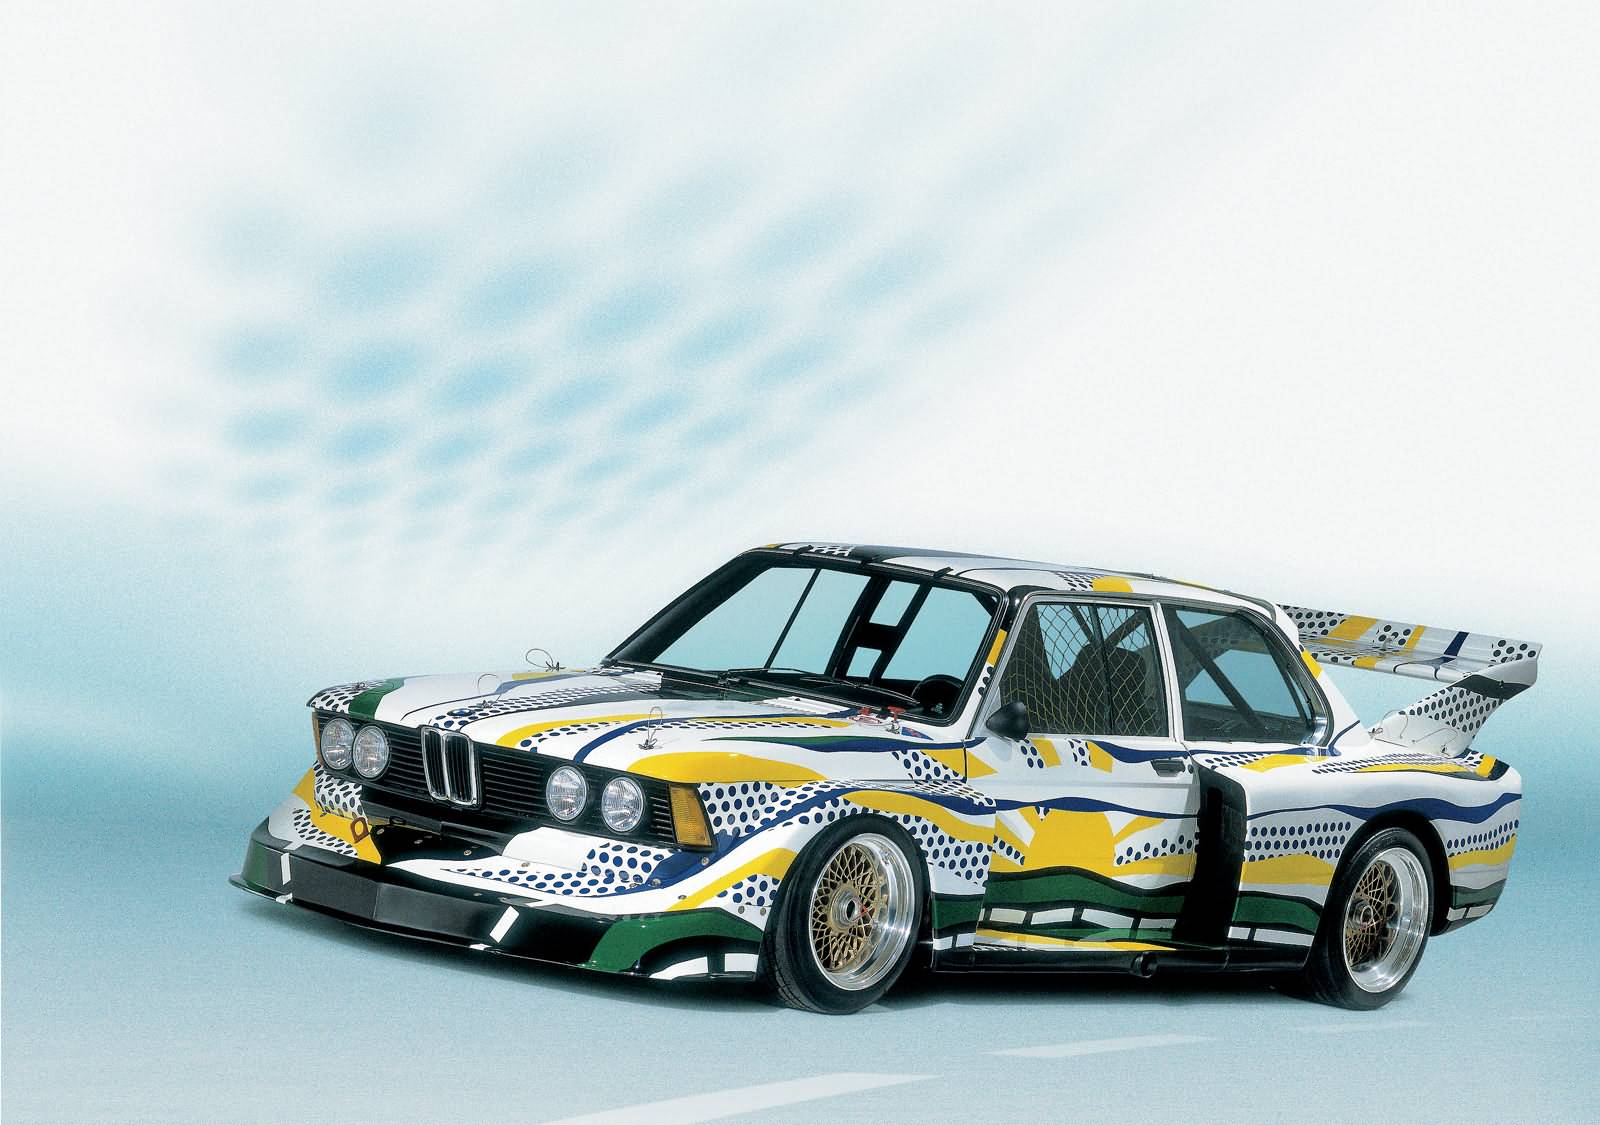 Roy Lichtenstein's Kunstwerk der BMW 320i